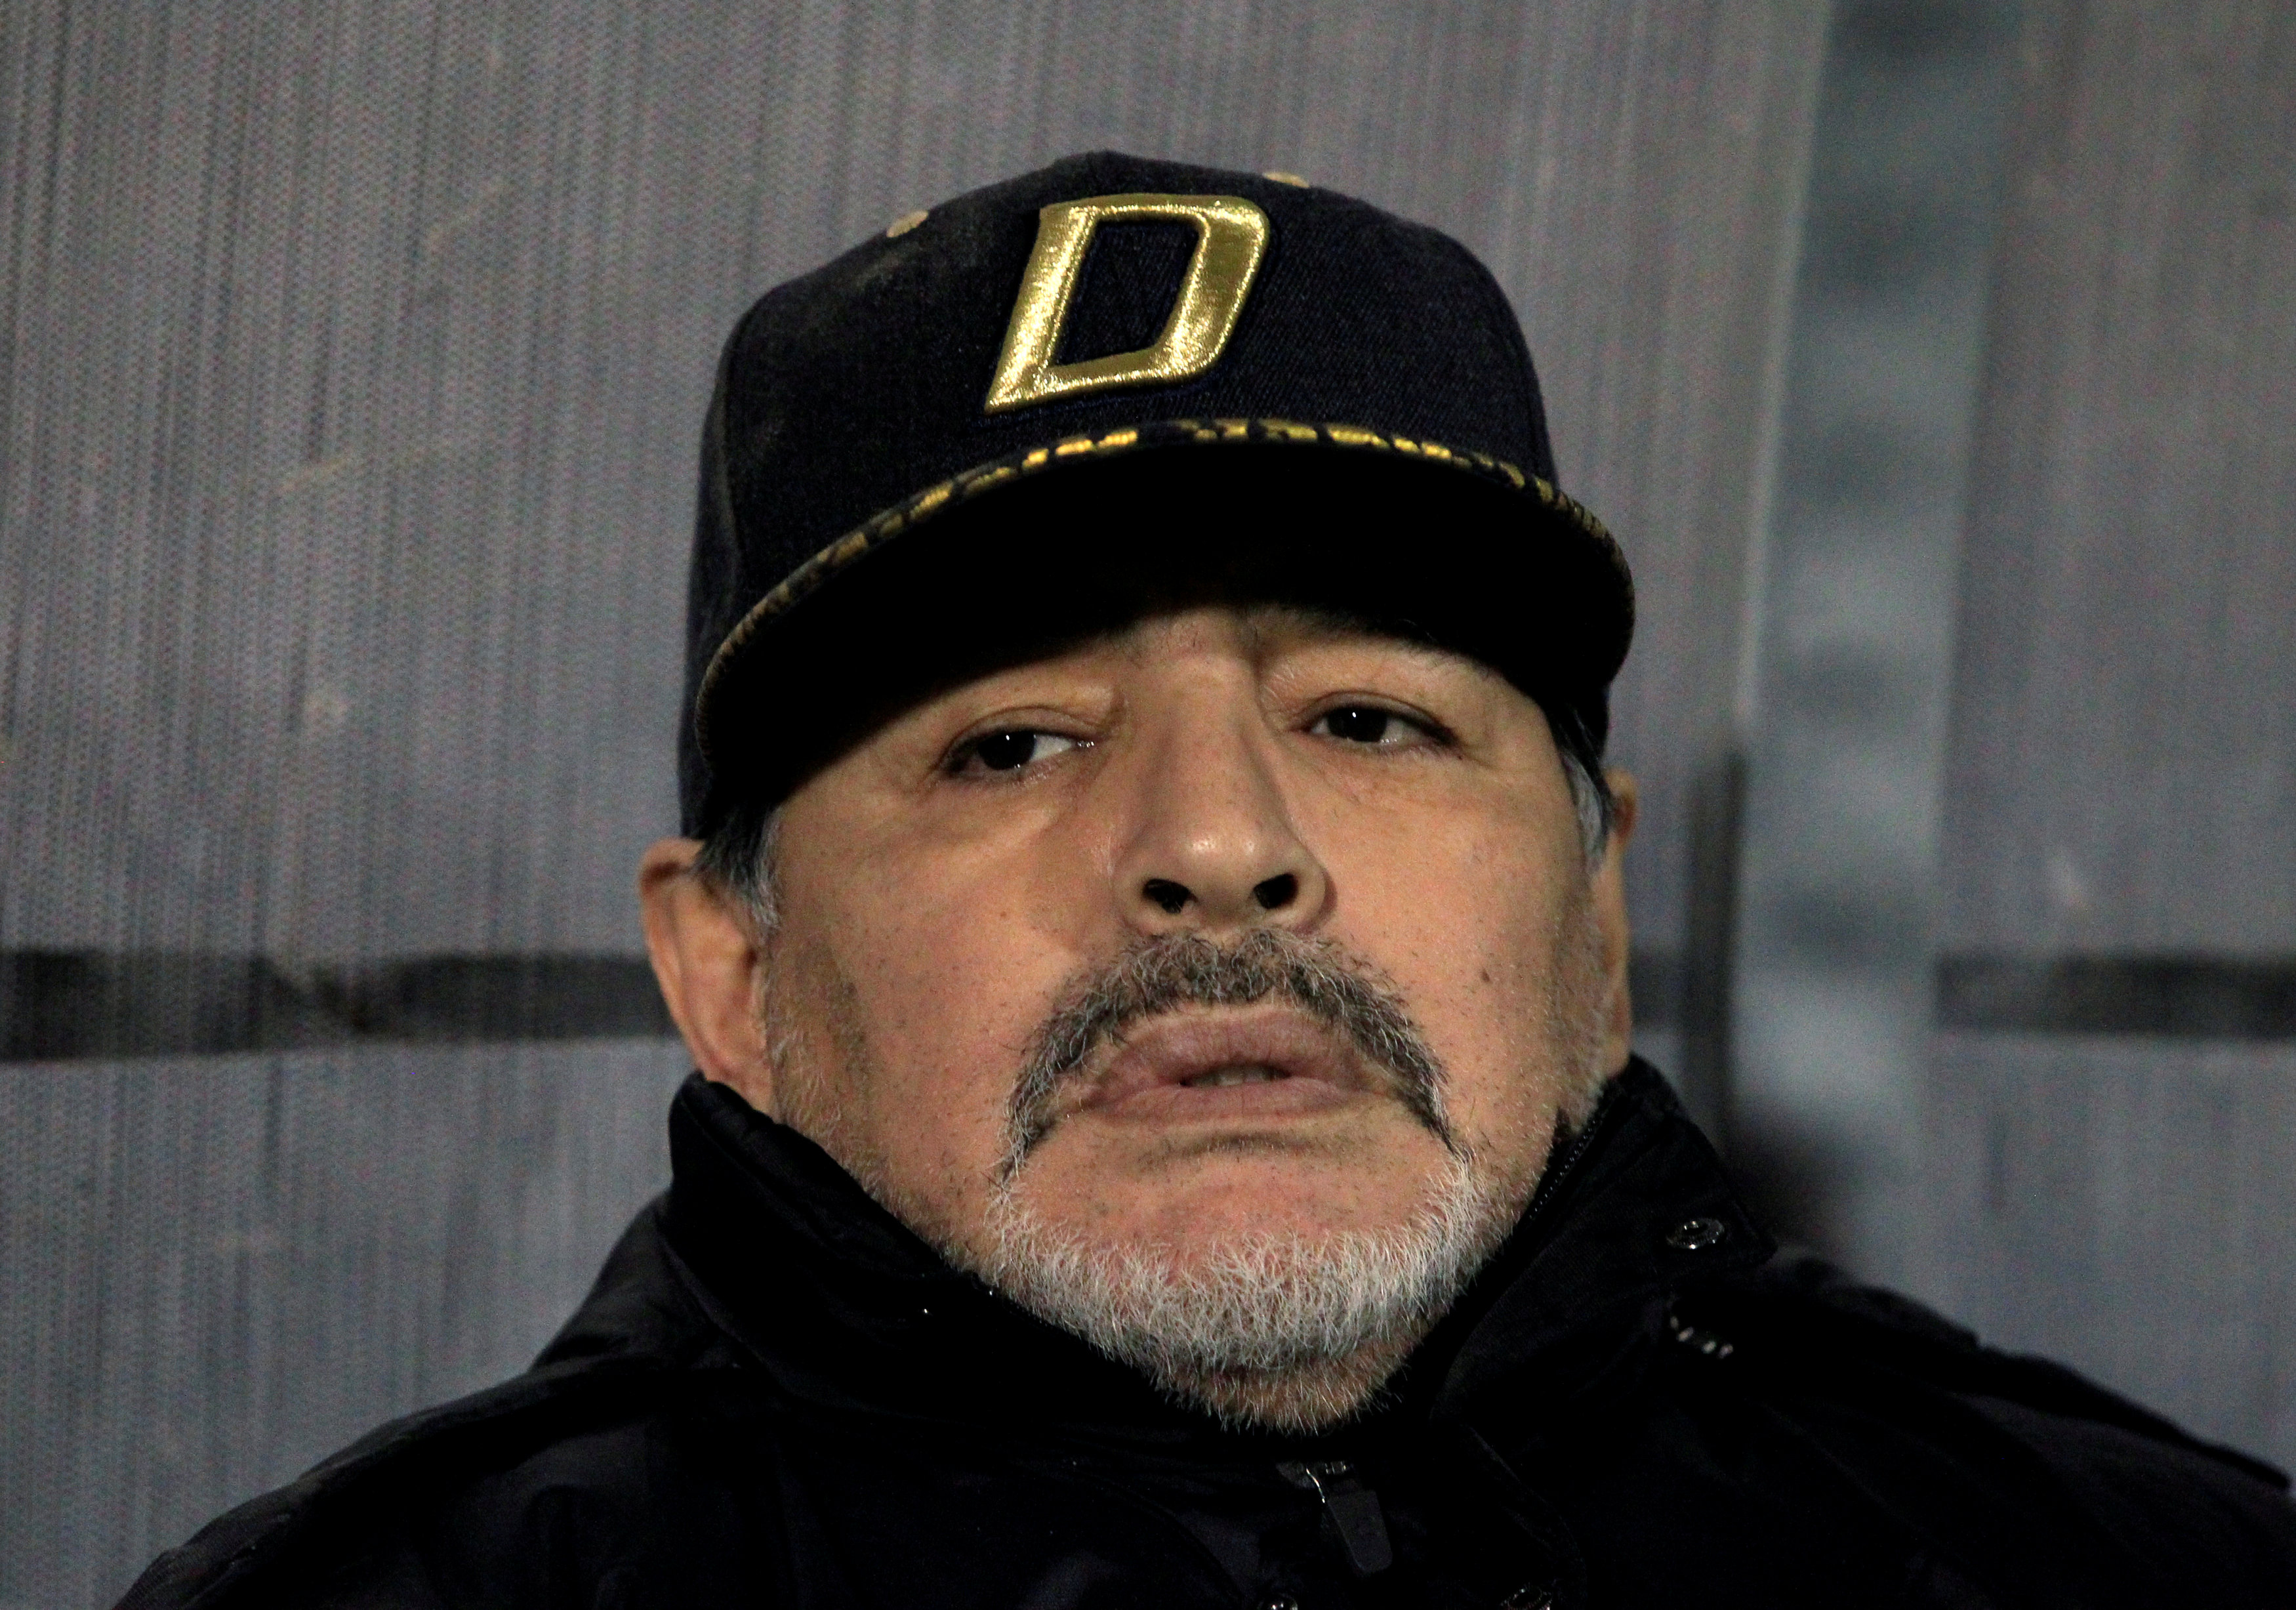 La última entrevista de Maradona: “A veces me pregunto si la gente me seguirá queriendo”